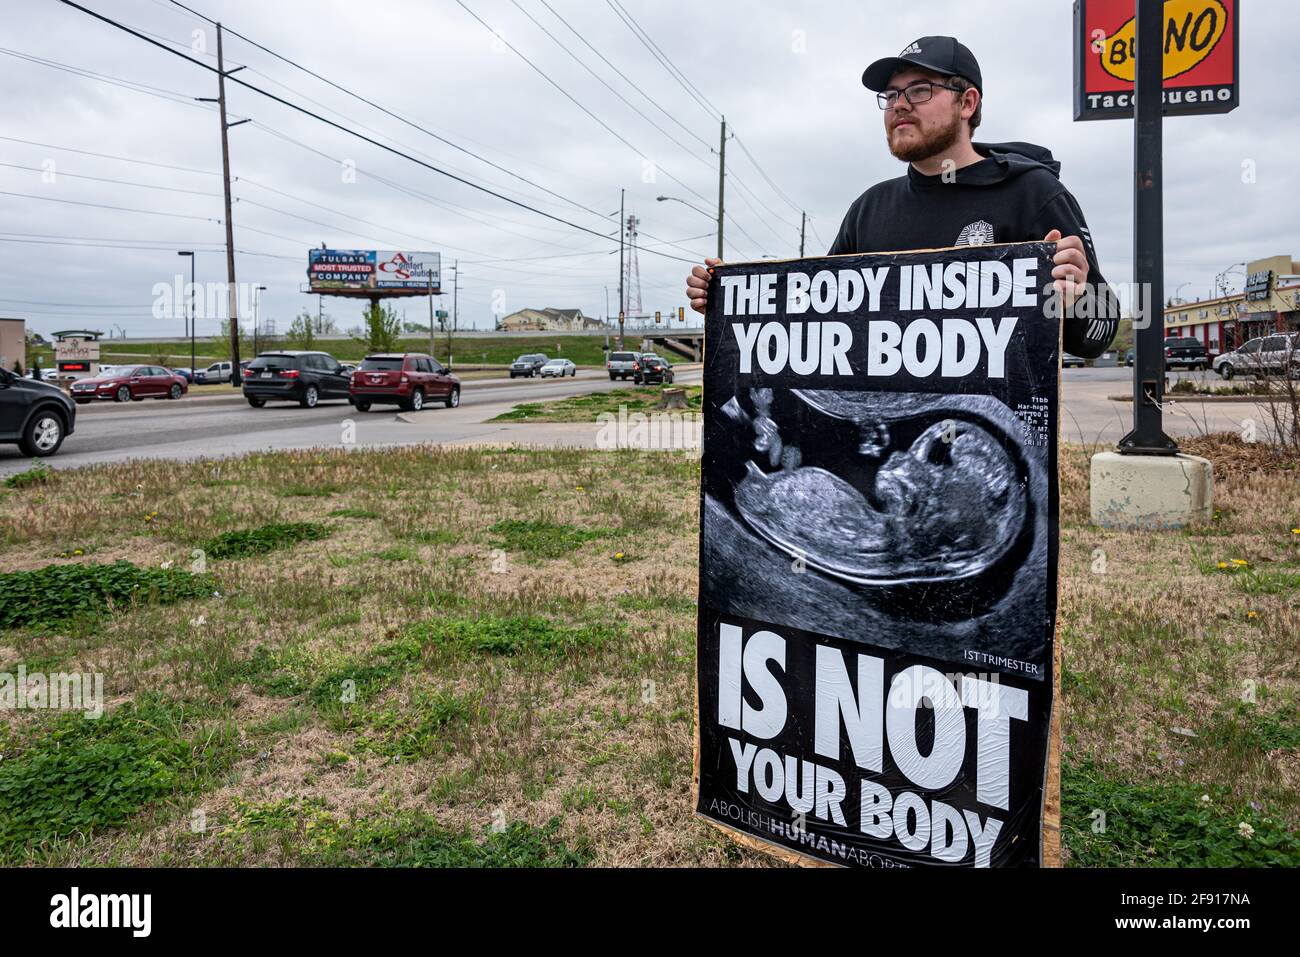 Un défenseur abolitionniste des droits de l'homme en faveur de l'avortement tient une affiche le long d'une autoroute très fréquentée près d'une installation d'avortement à Tulsa, Oklahoma, pour éduquer et rappeler aux passants et pour se tenir dans l'écart pour les êtres humains nés sans défense. (ÉTATS-UNIS) Banque D'Images